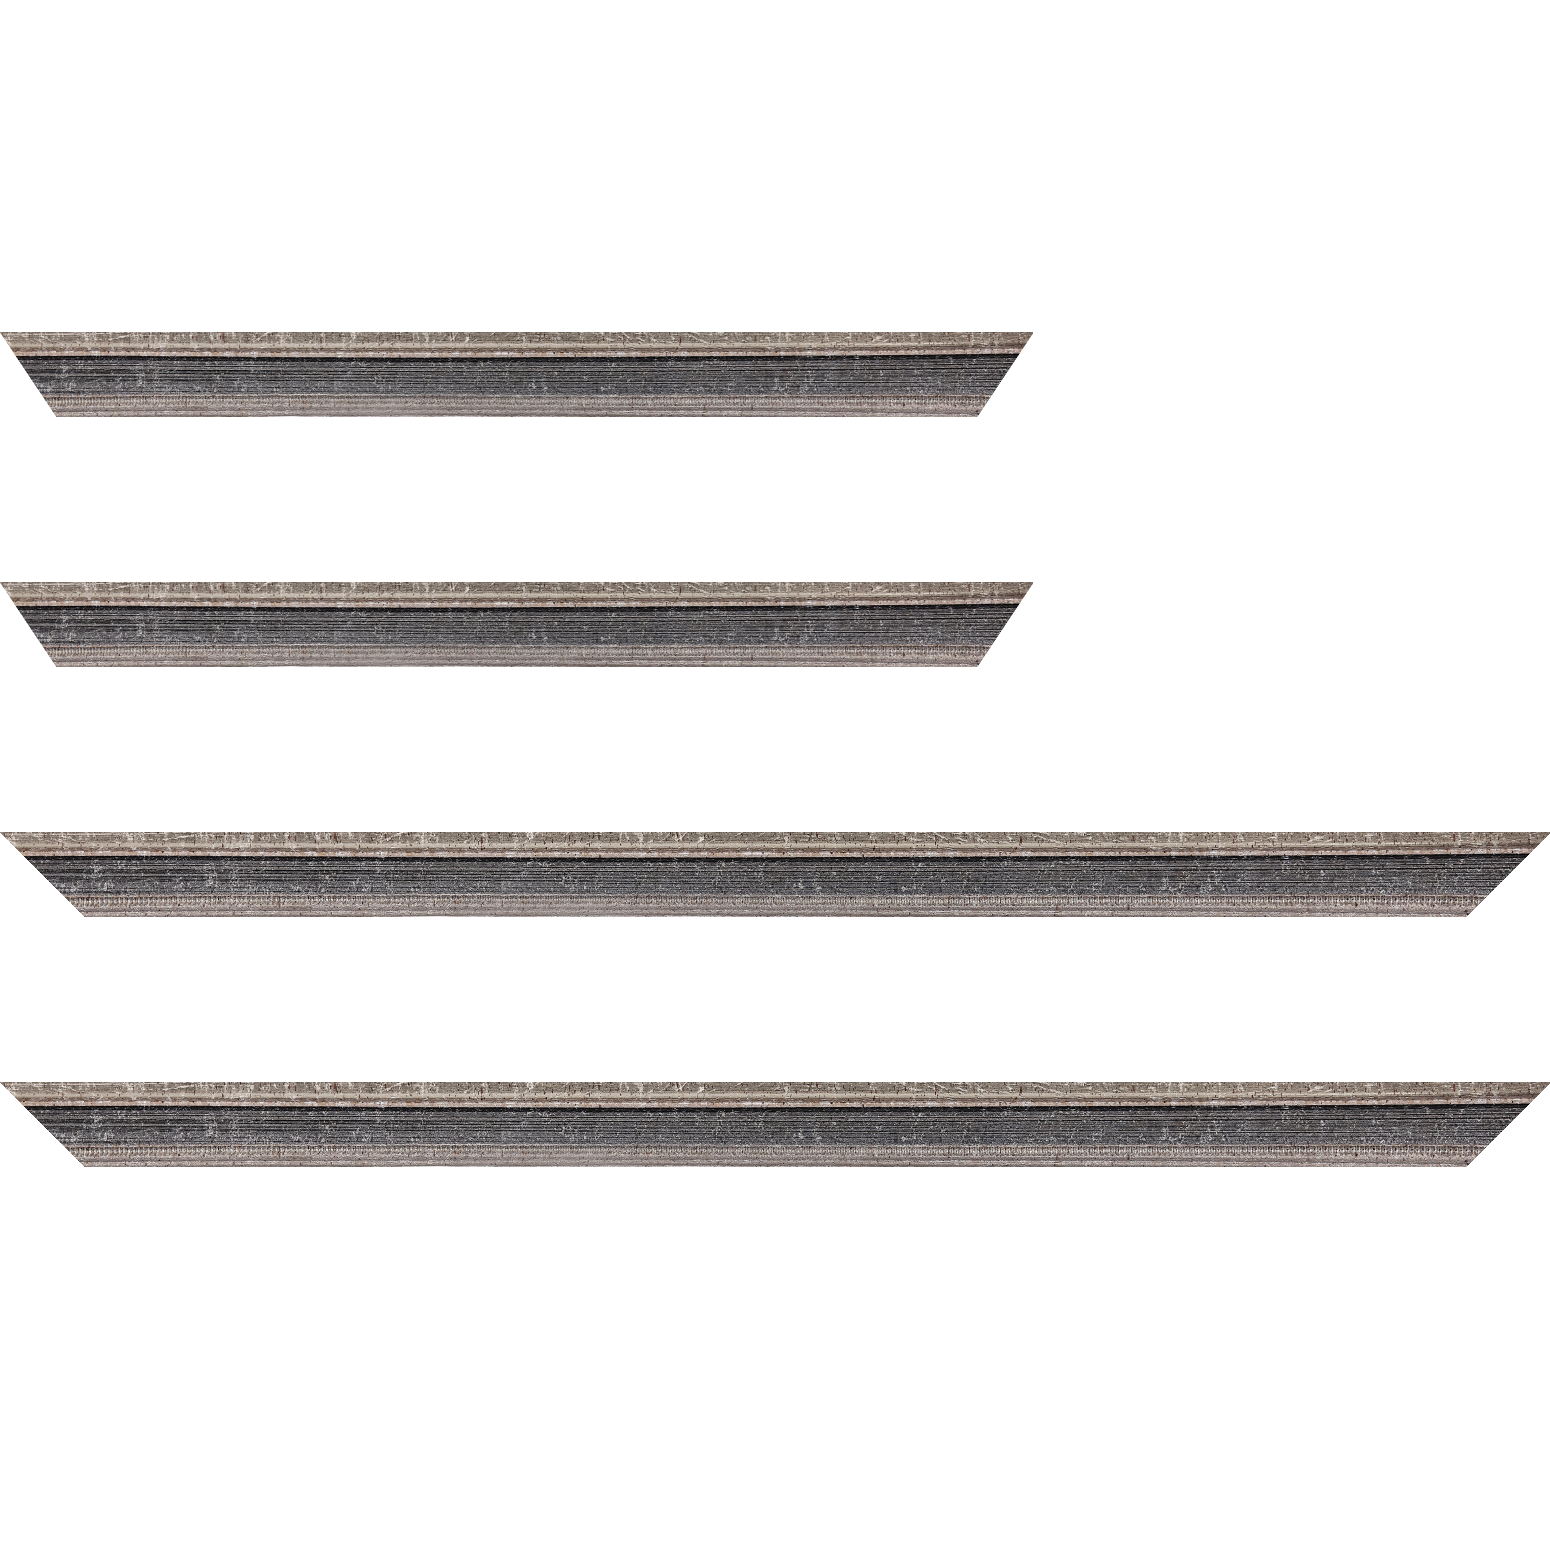 Baguette bois profil incurvé largeur 2.4cm argent antique gorge gris noirci vieilli filet perle argent - 24x30